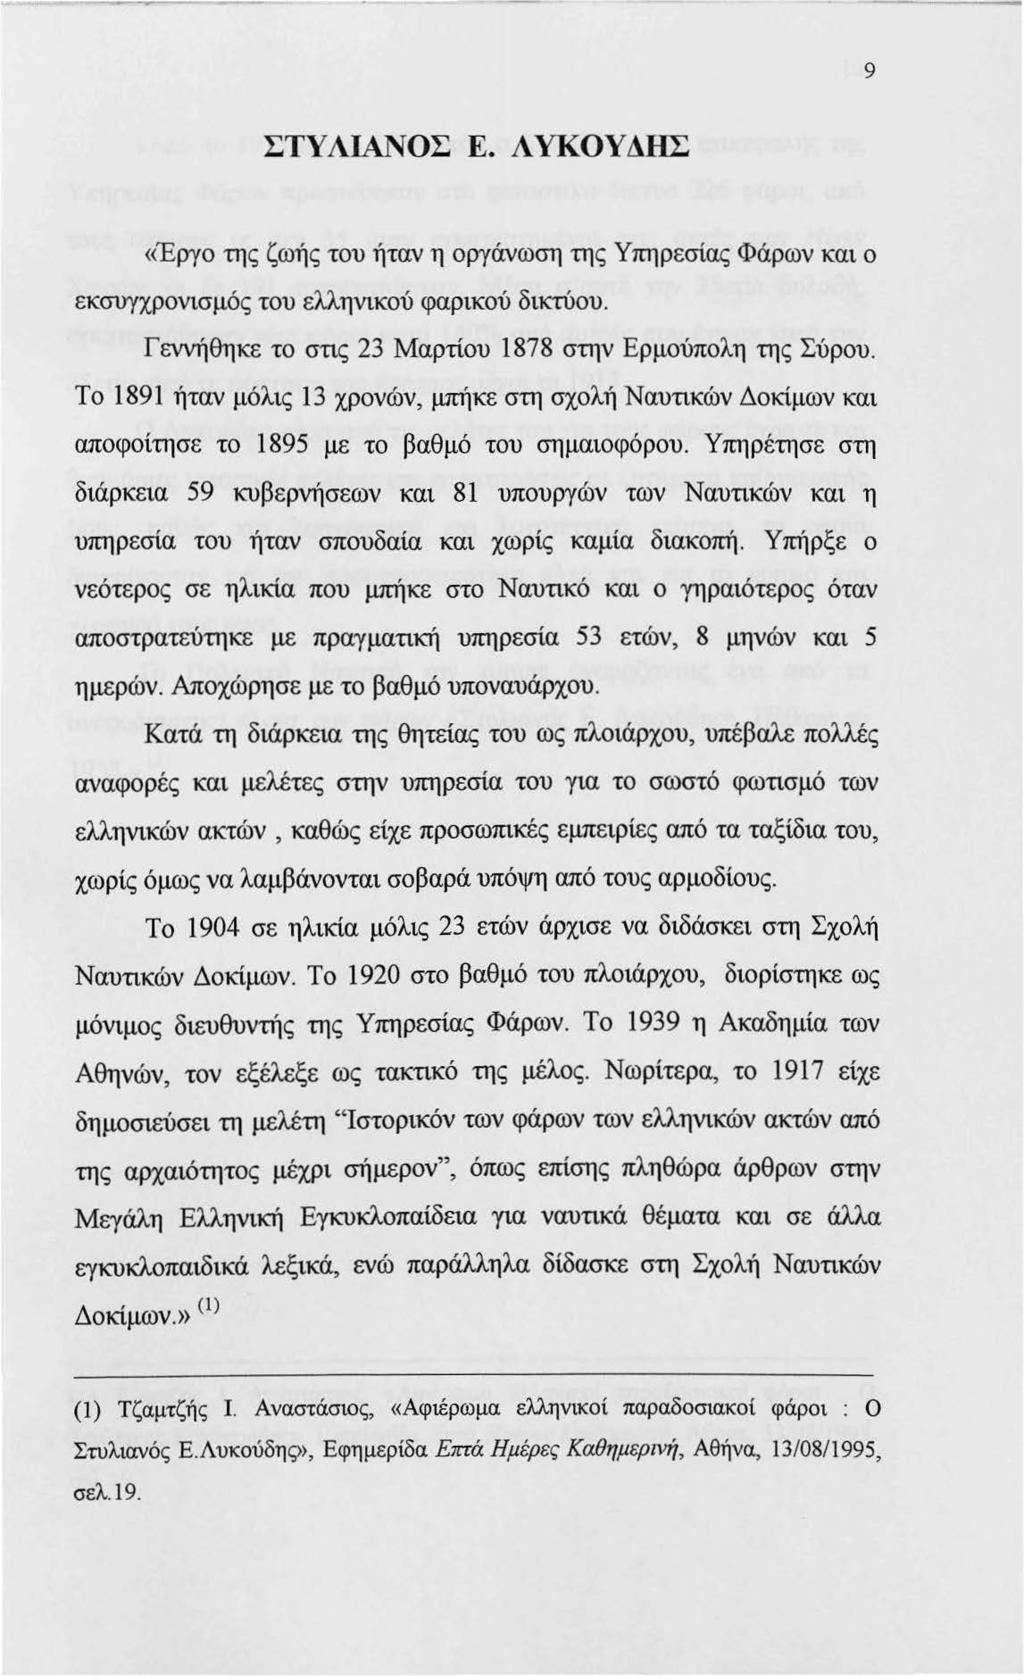 9 ΣΤΥΛΙΑΝΟΣ Ε. ΛΥΚΟΥΔΗΣ «Έργο της ζωής του ήταν η οργάνωση της Υπηρεσίας Φάρων και ο εκσυγχρονισμός του ελληνικού φαρικού δικτύου. Γεννήθηκε το στις 23 Μαρτίου 1878 στην Ερμούπολη της Σύρου.